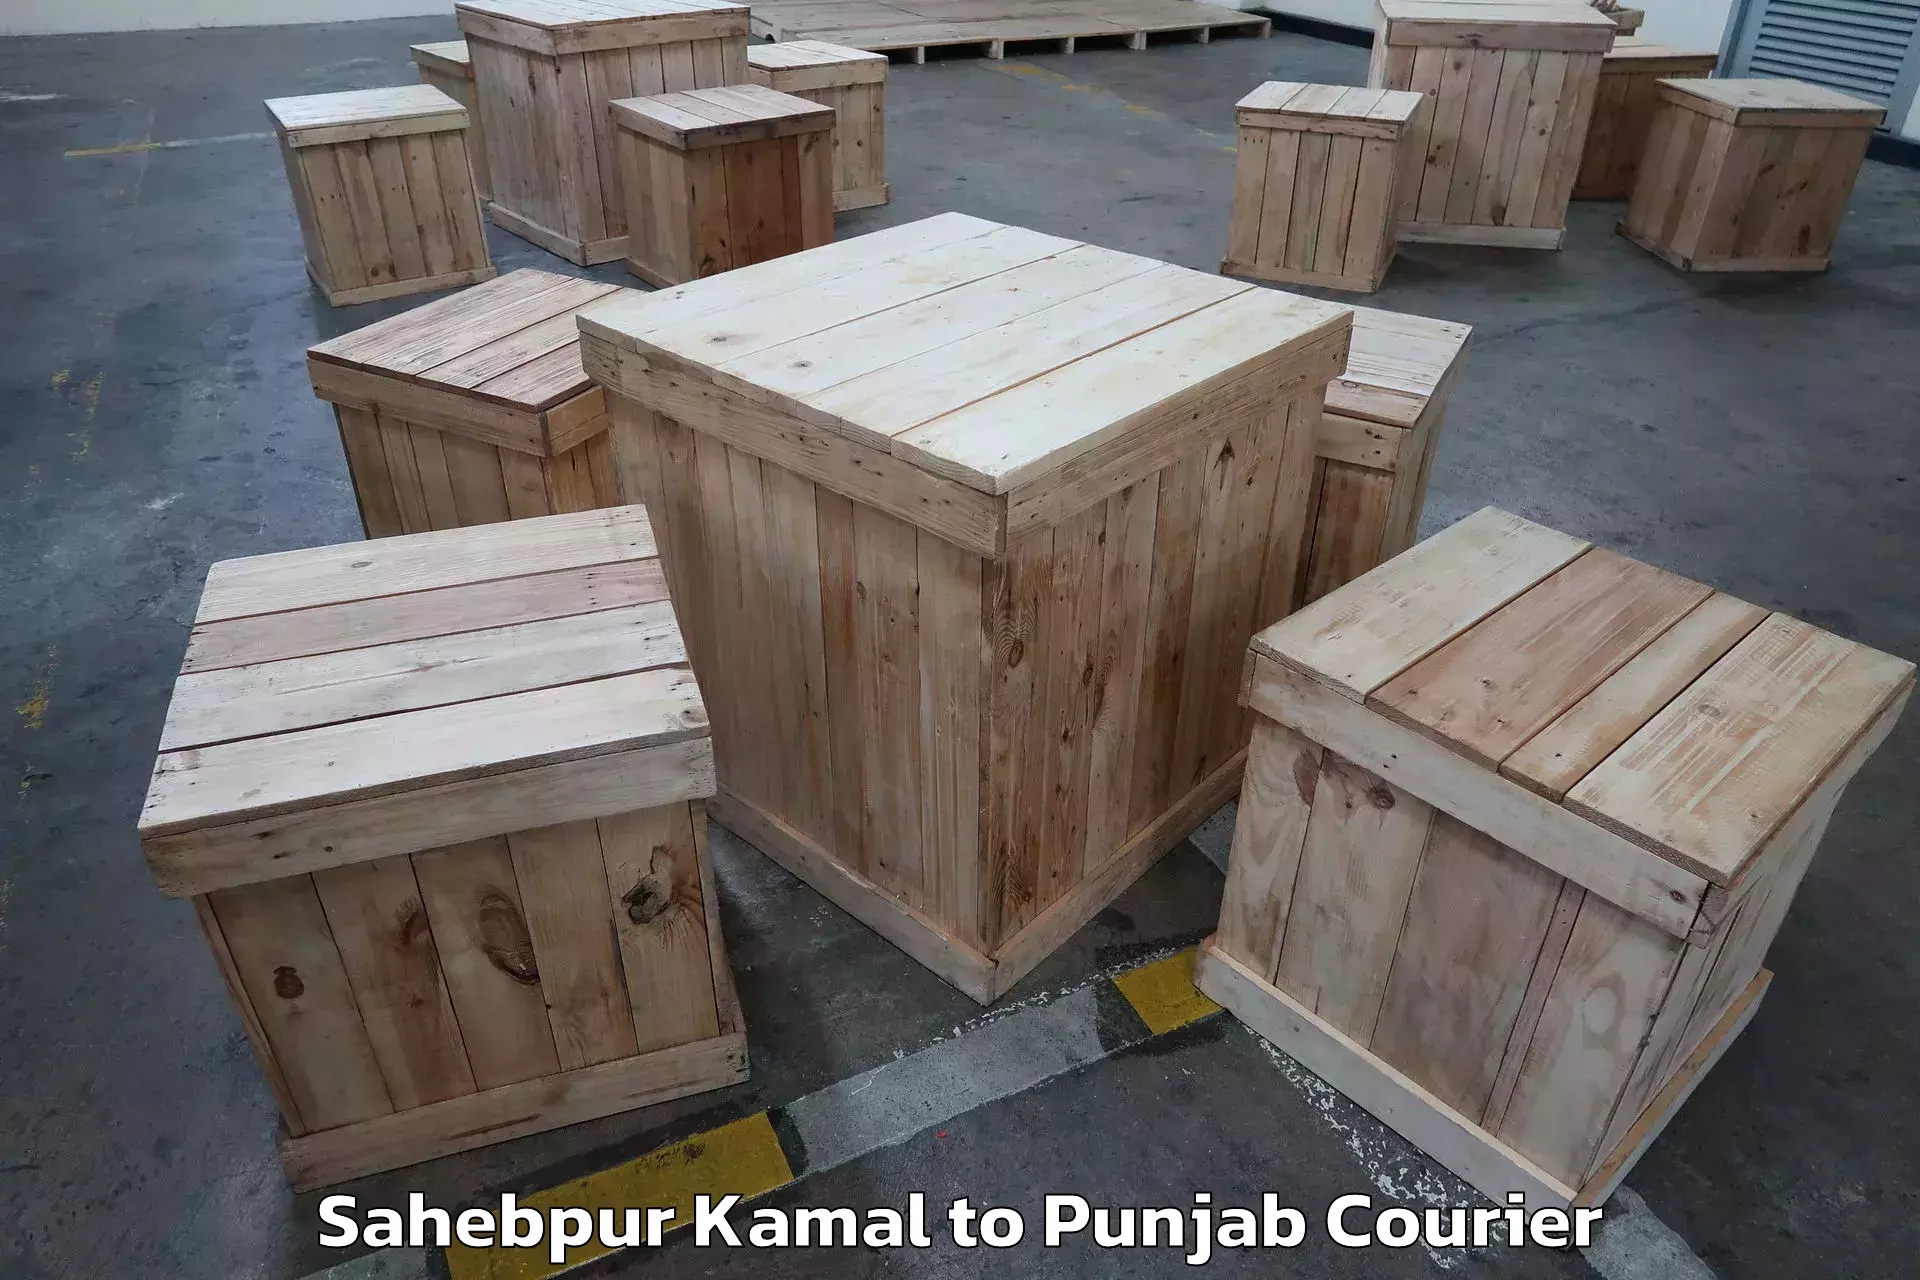 Reliable moving assistance Sahebpur Kamal to Punjab